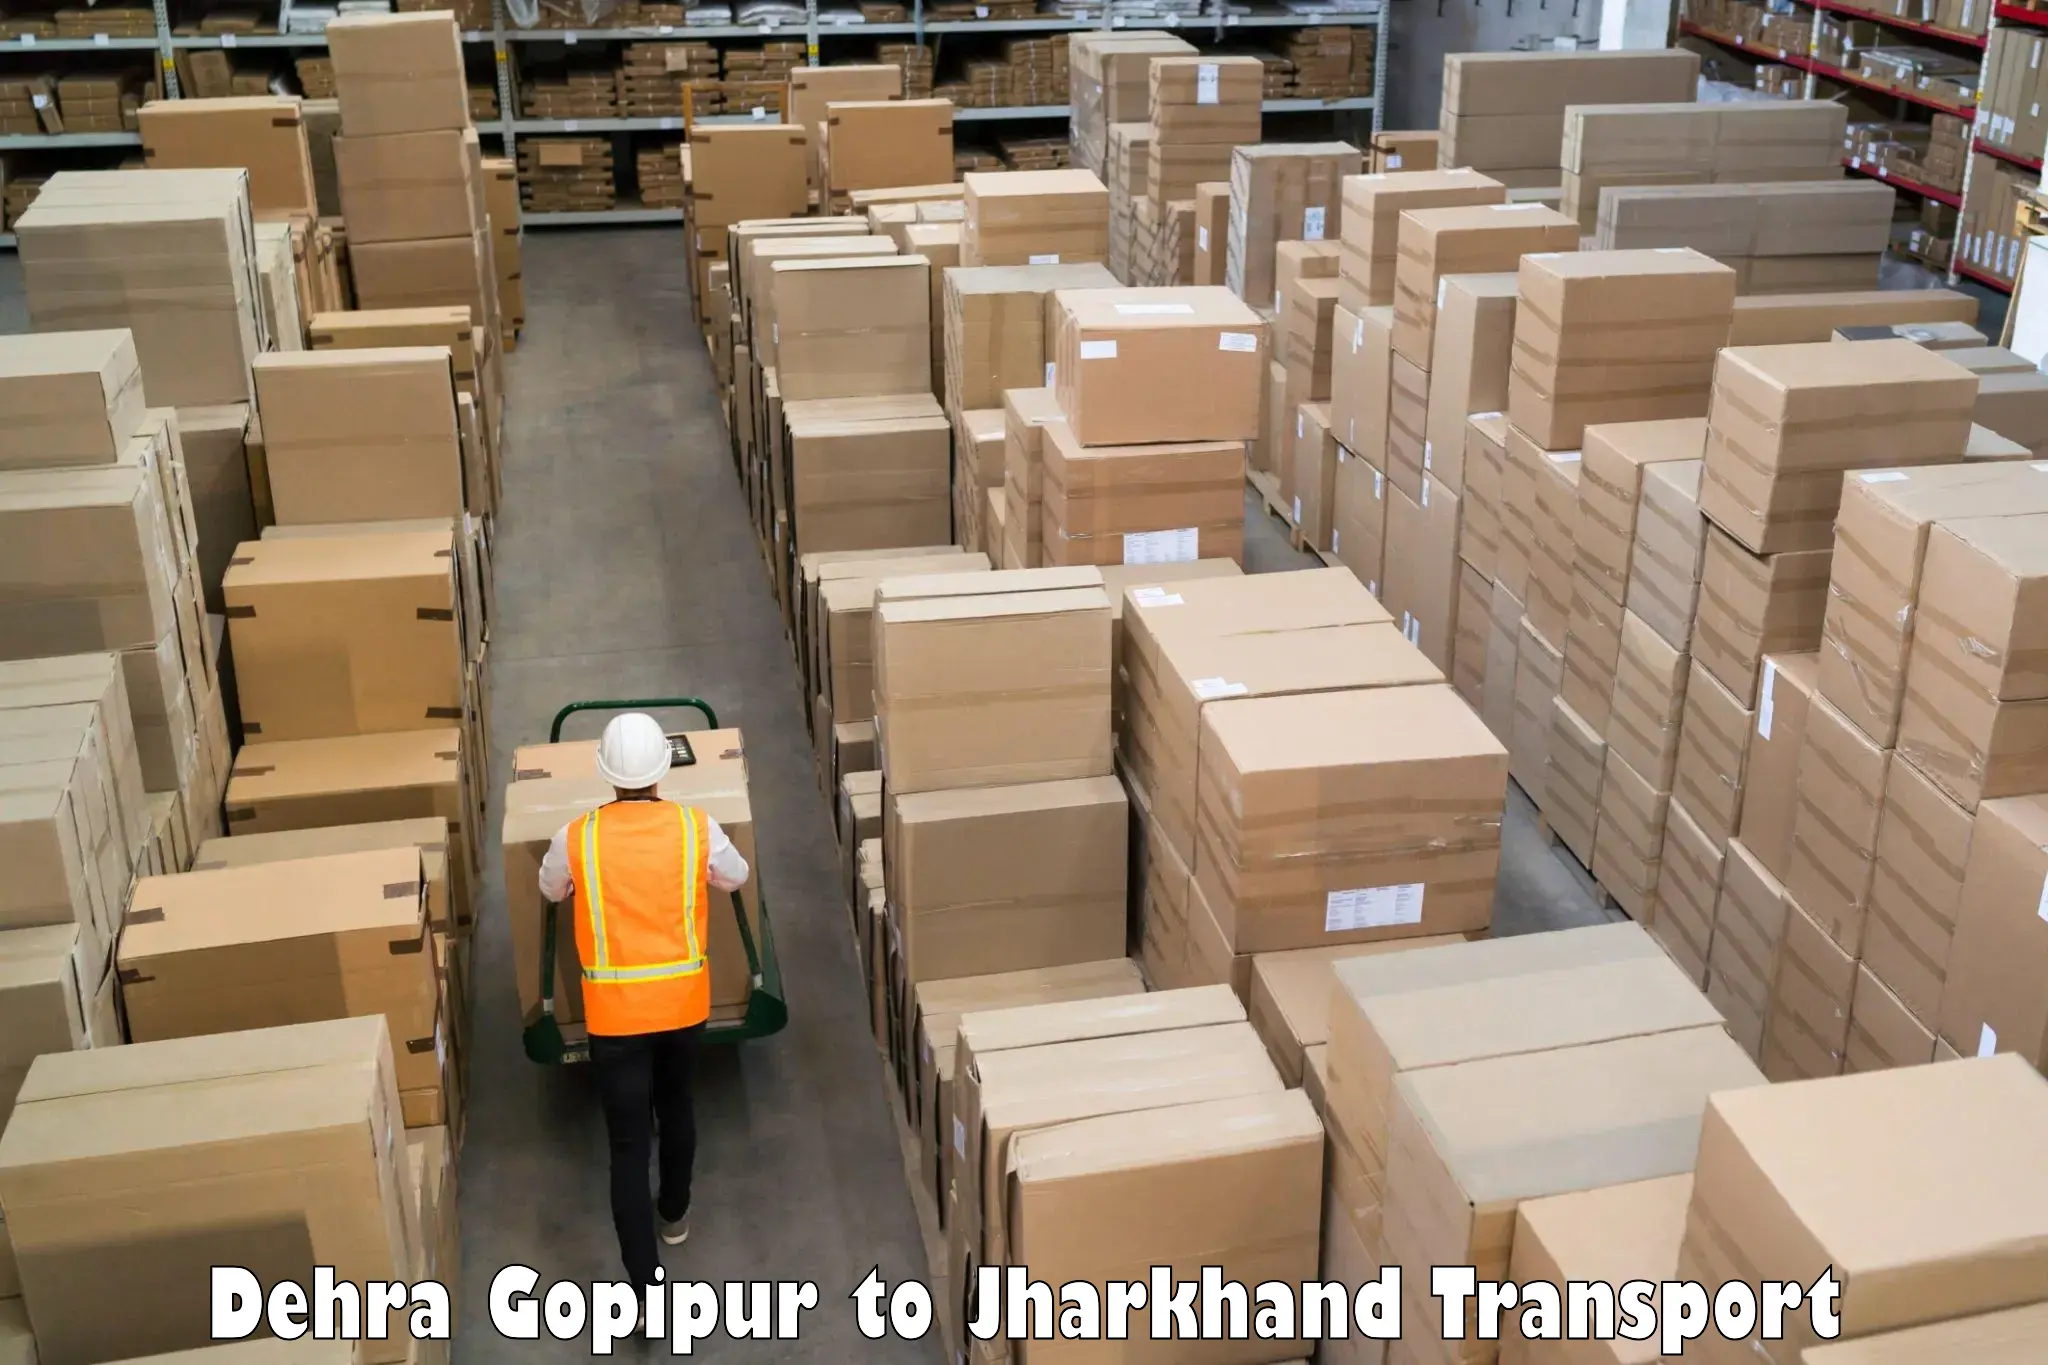 Furniture transport service Dehra Gopipur to Kedla